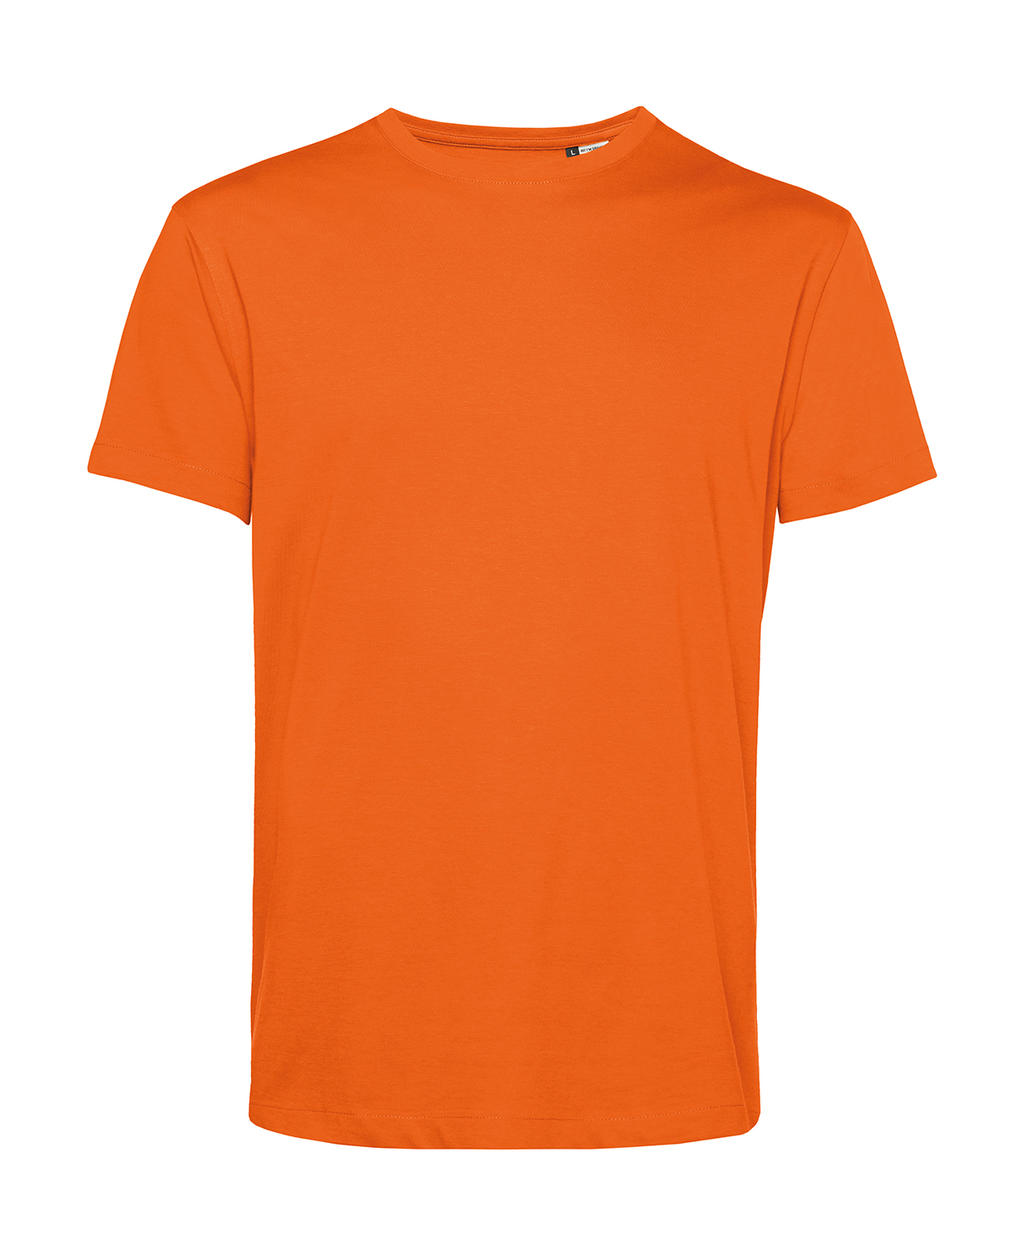 Tričko BC Organic Inspire E150 - oranžové, XXL